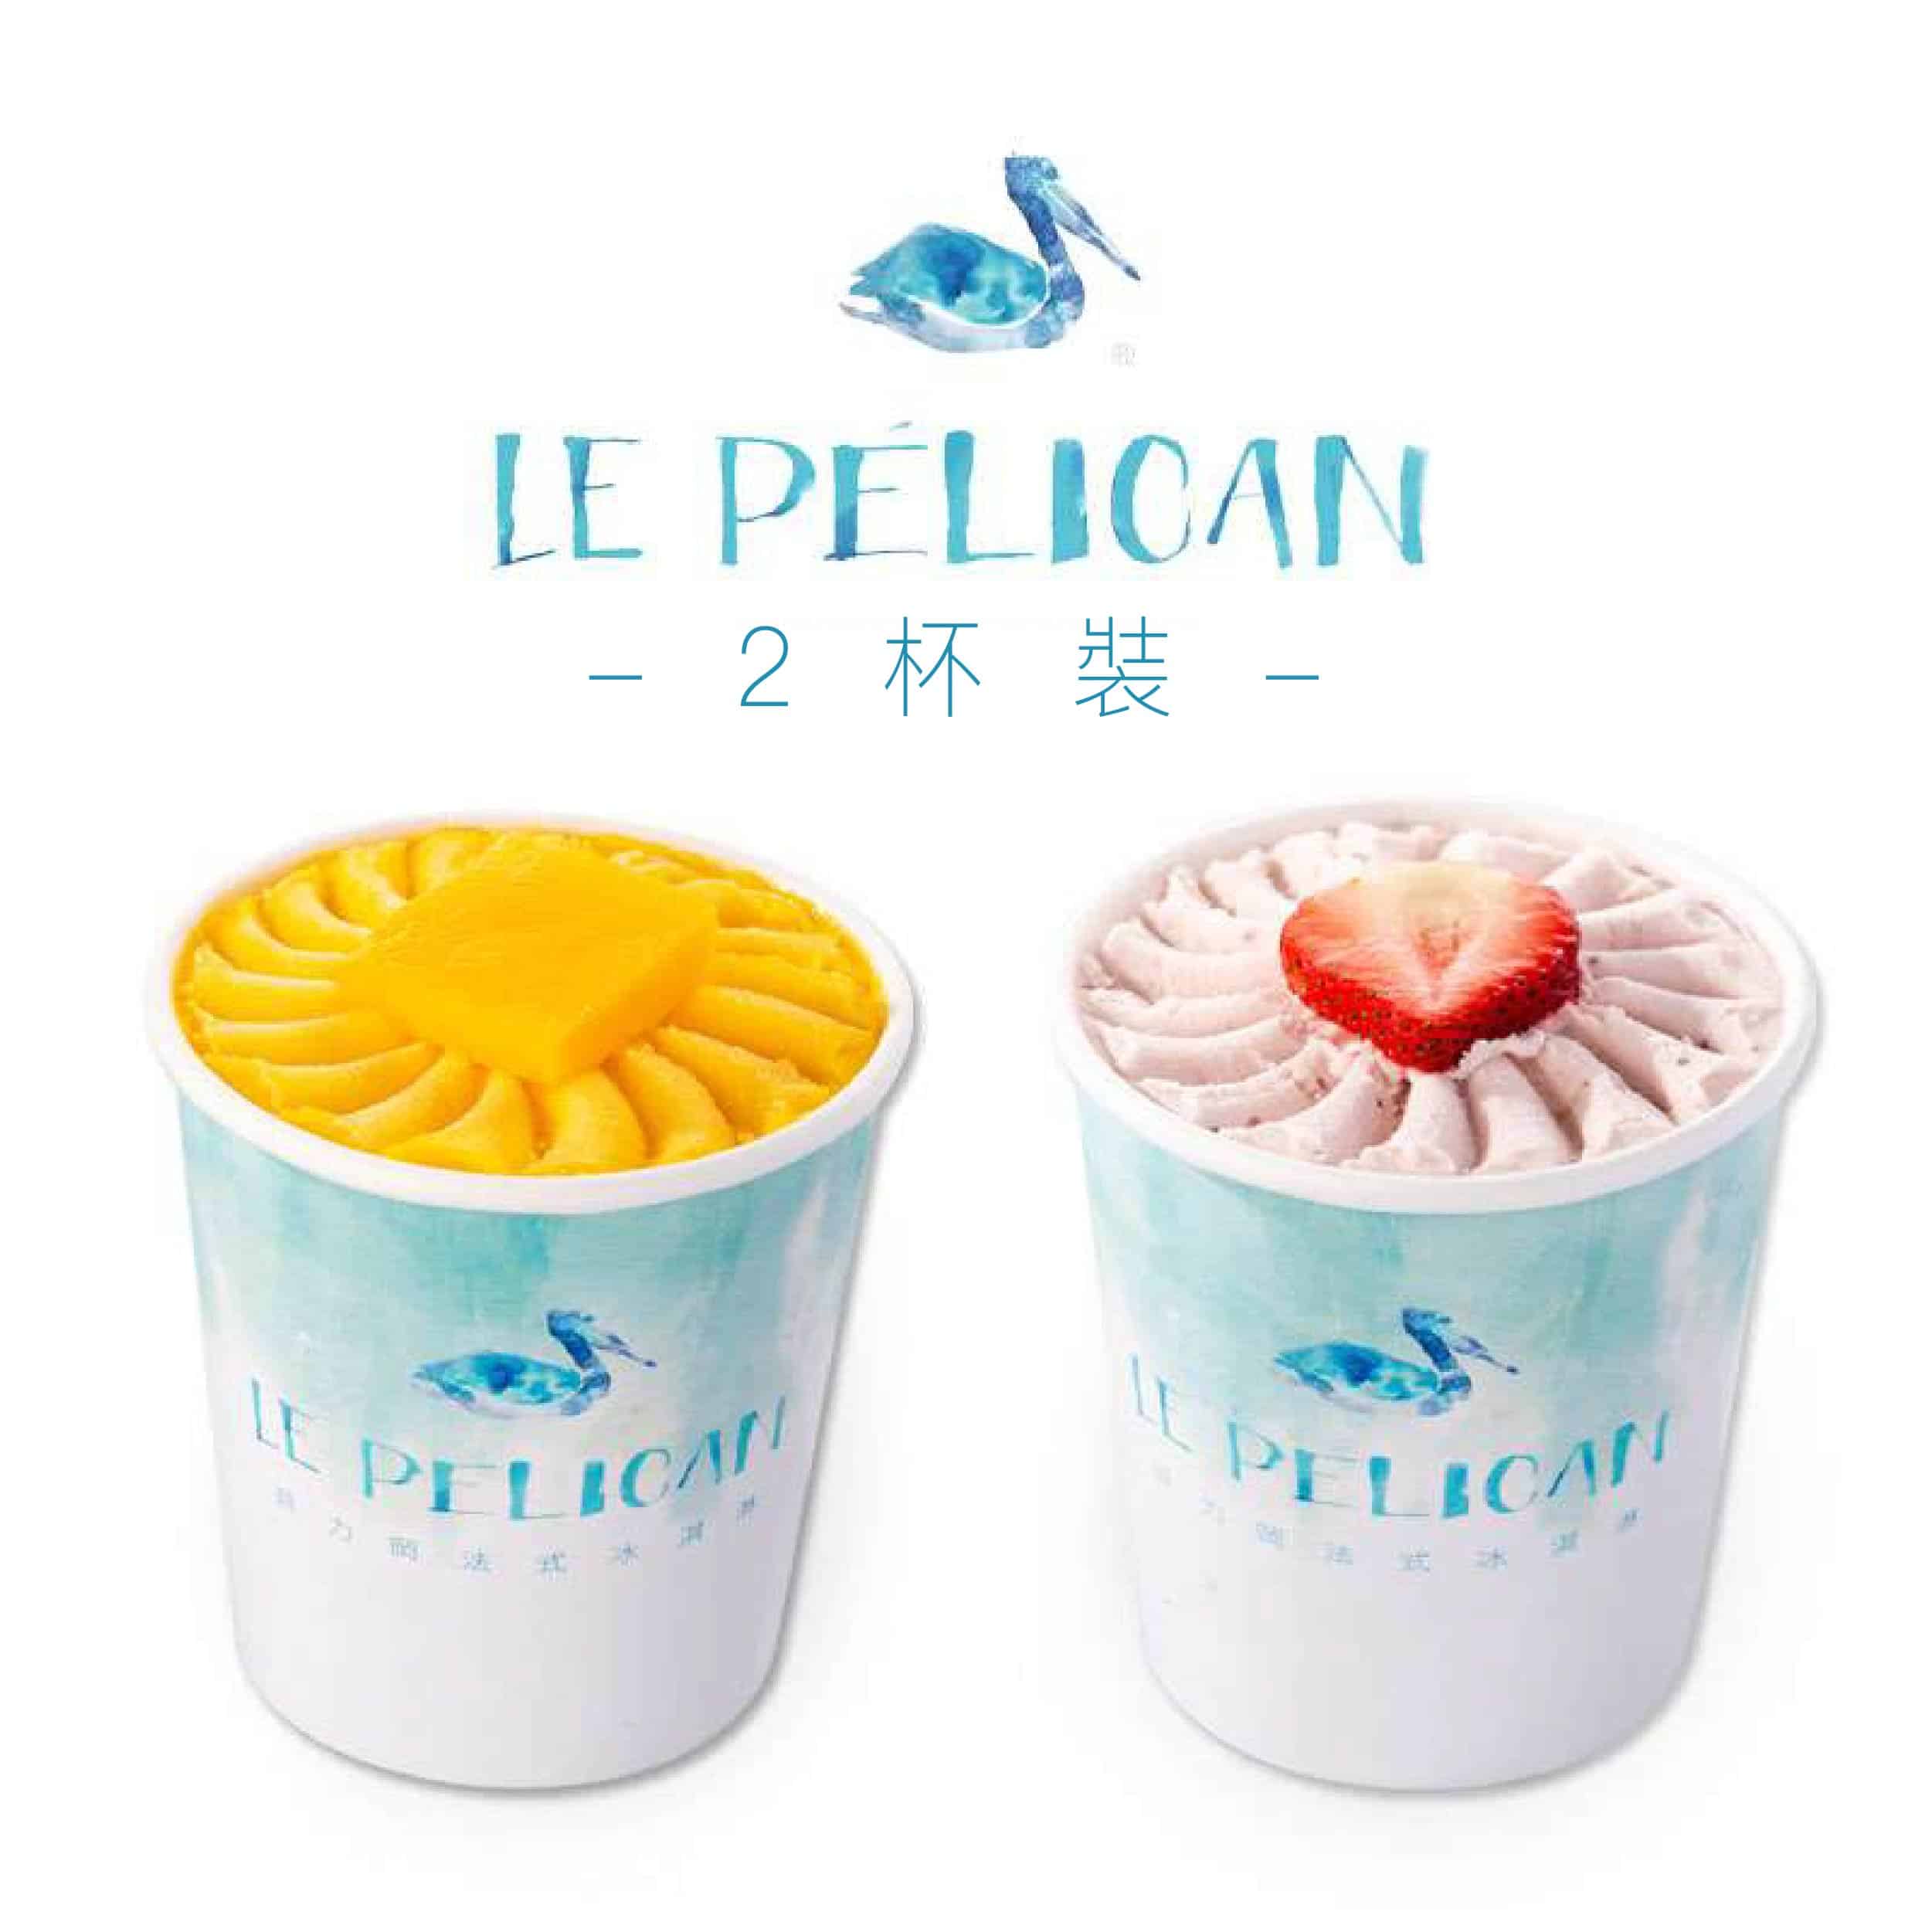 貝力岡法式冰淇淋 共享杯2入 (任選2-4種口味)